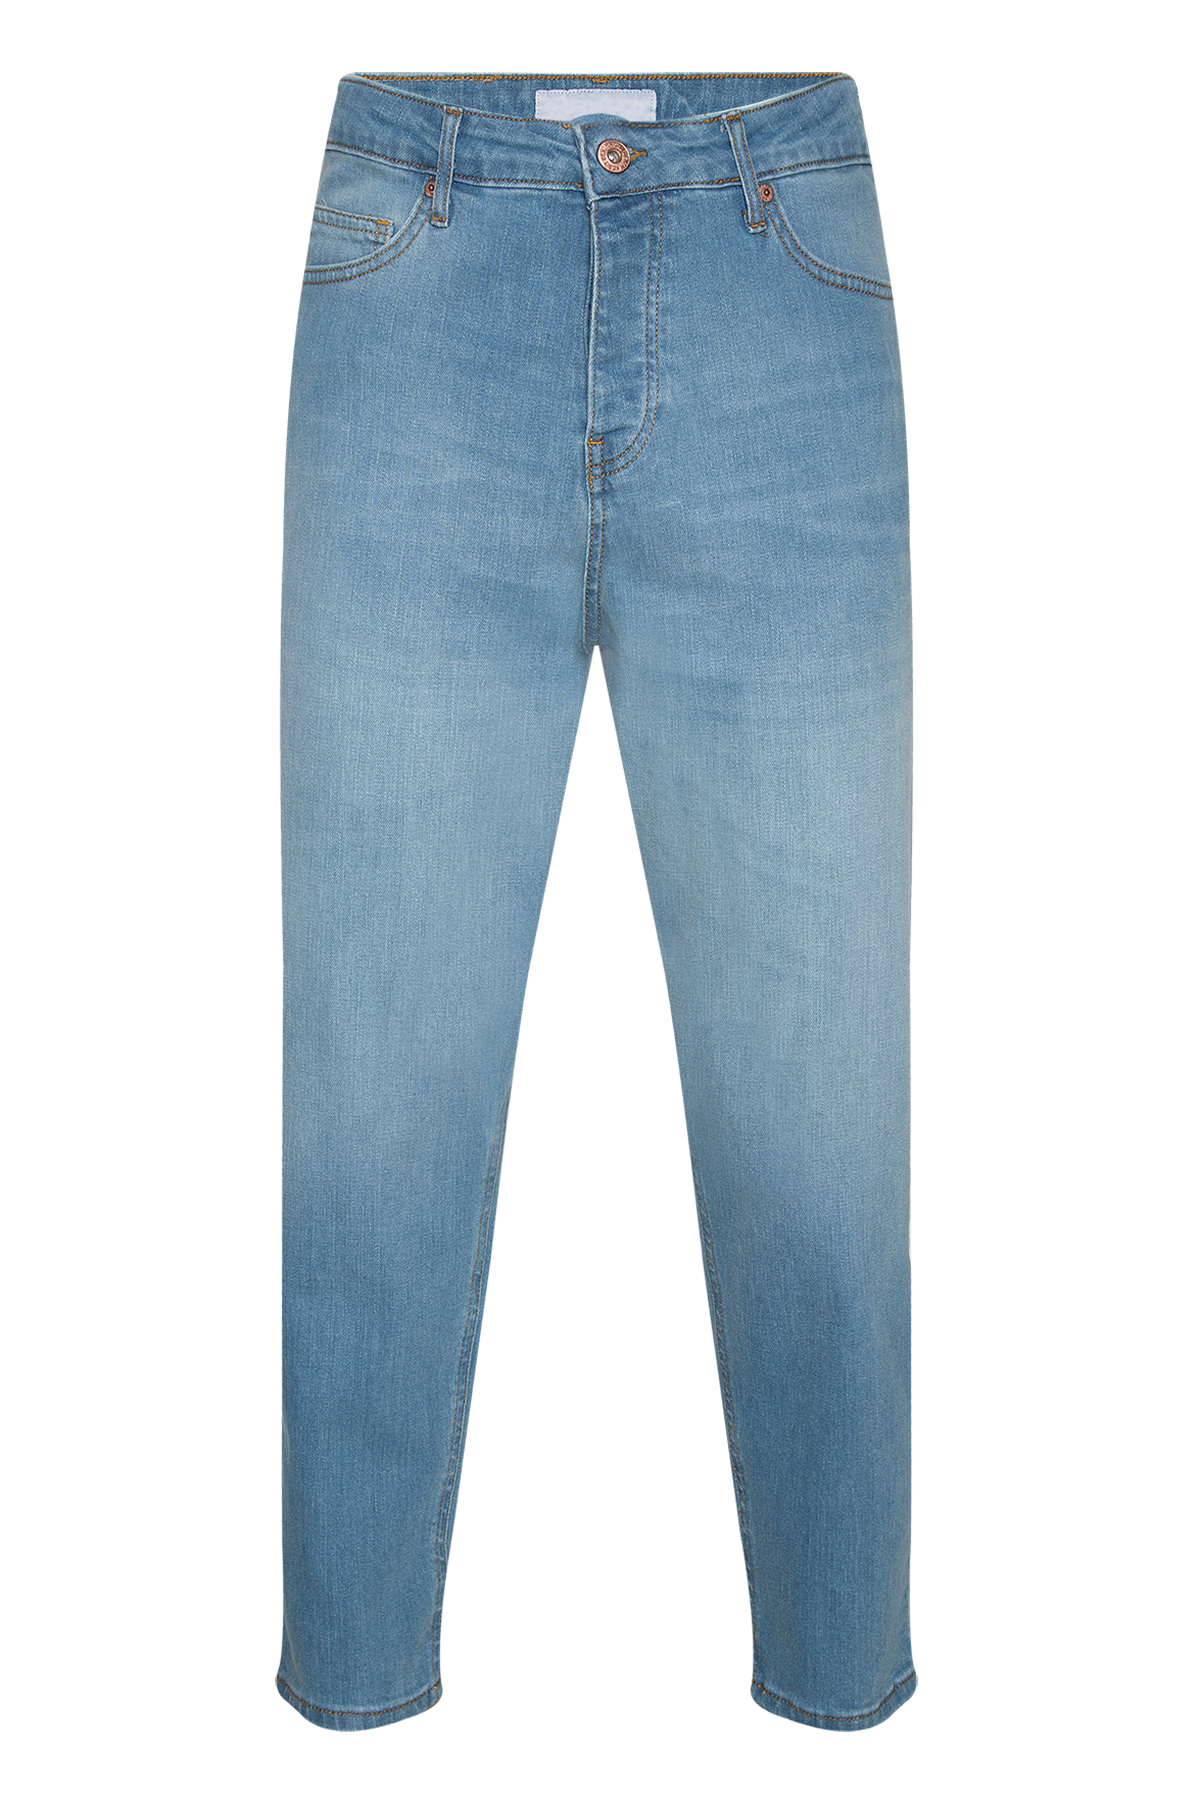 Mavi Boyfriend Jeans & Denim Pantolon 2YXE5-45995-12